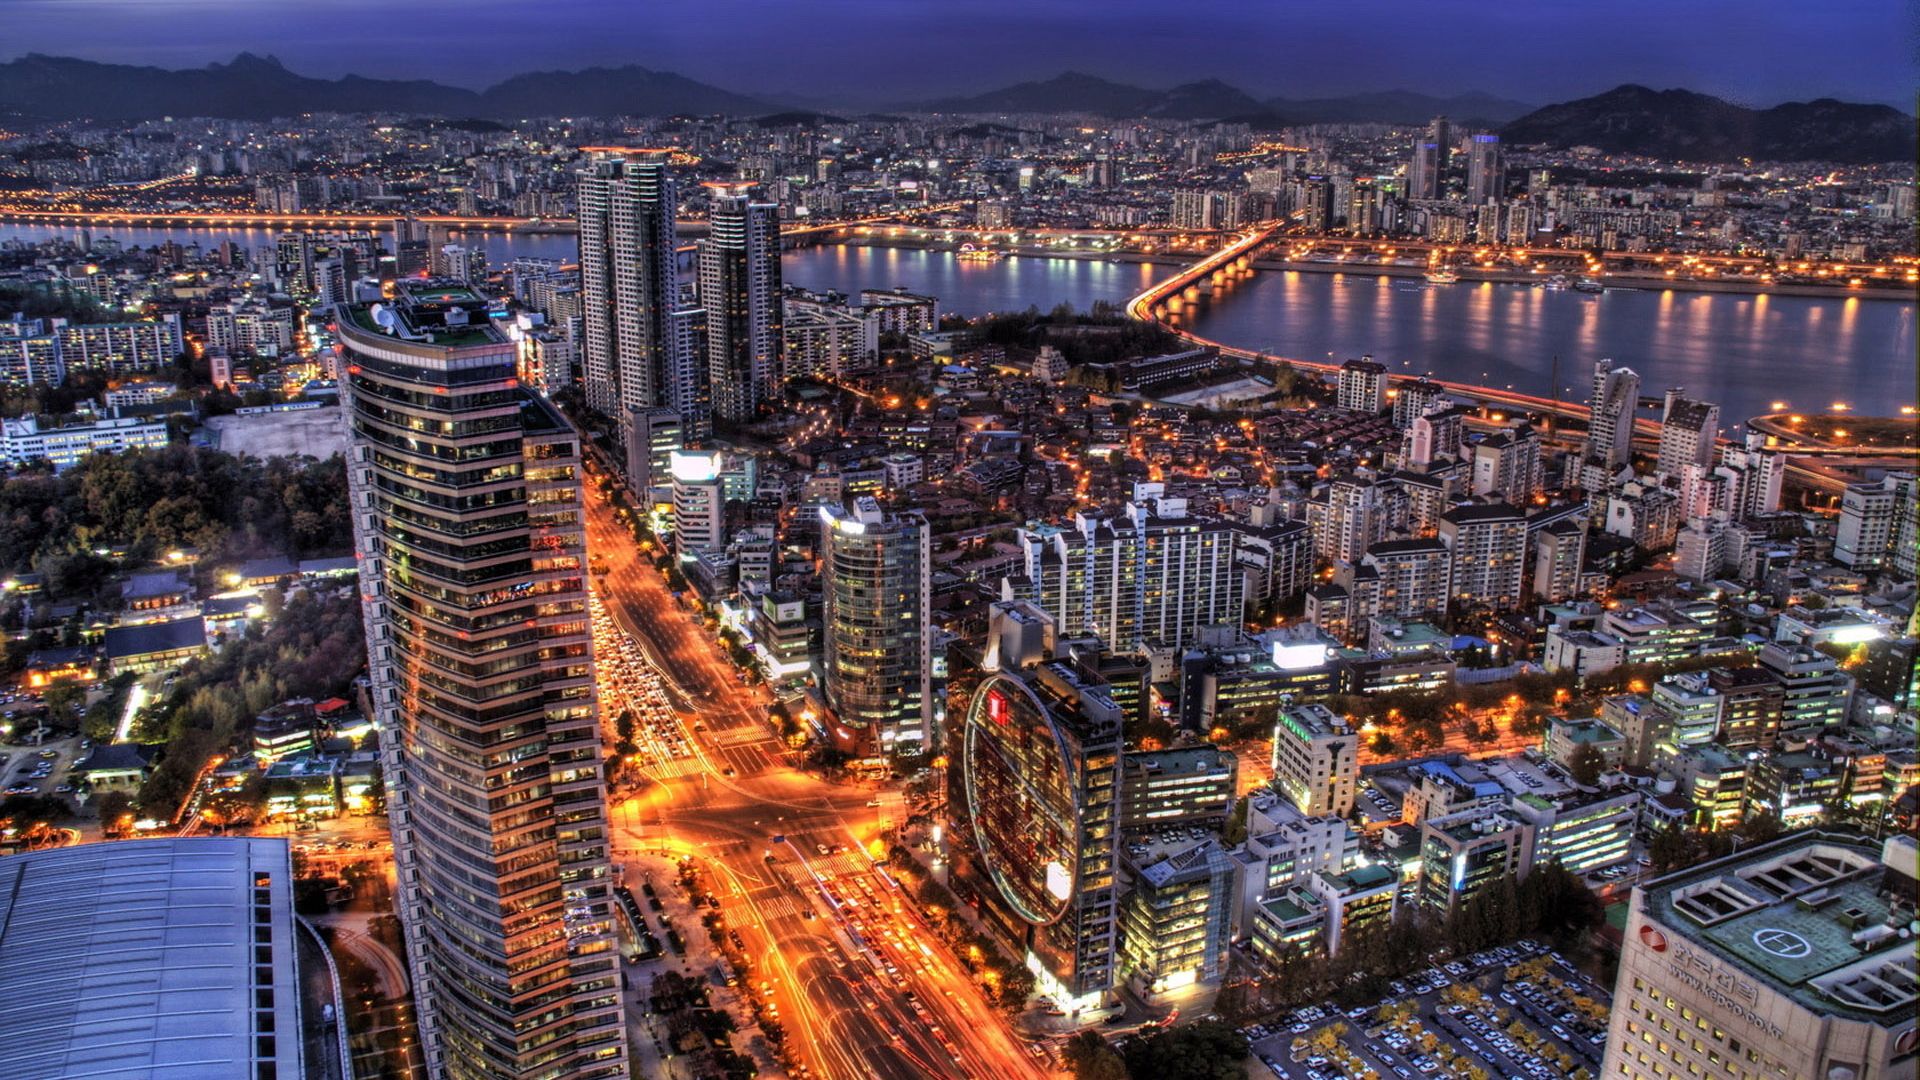 首尔 首尔已19744亿元排在亚洲第五,作为一个国家的首都它能有这样高